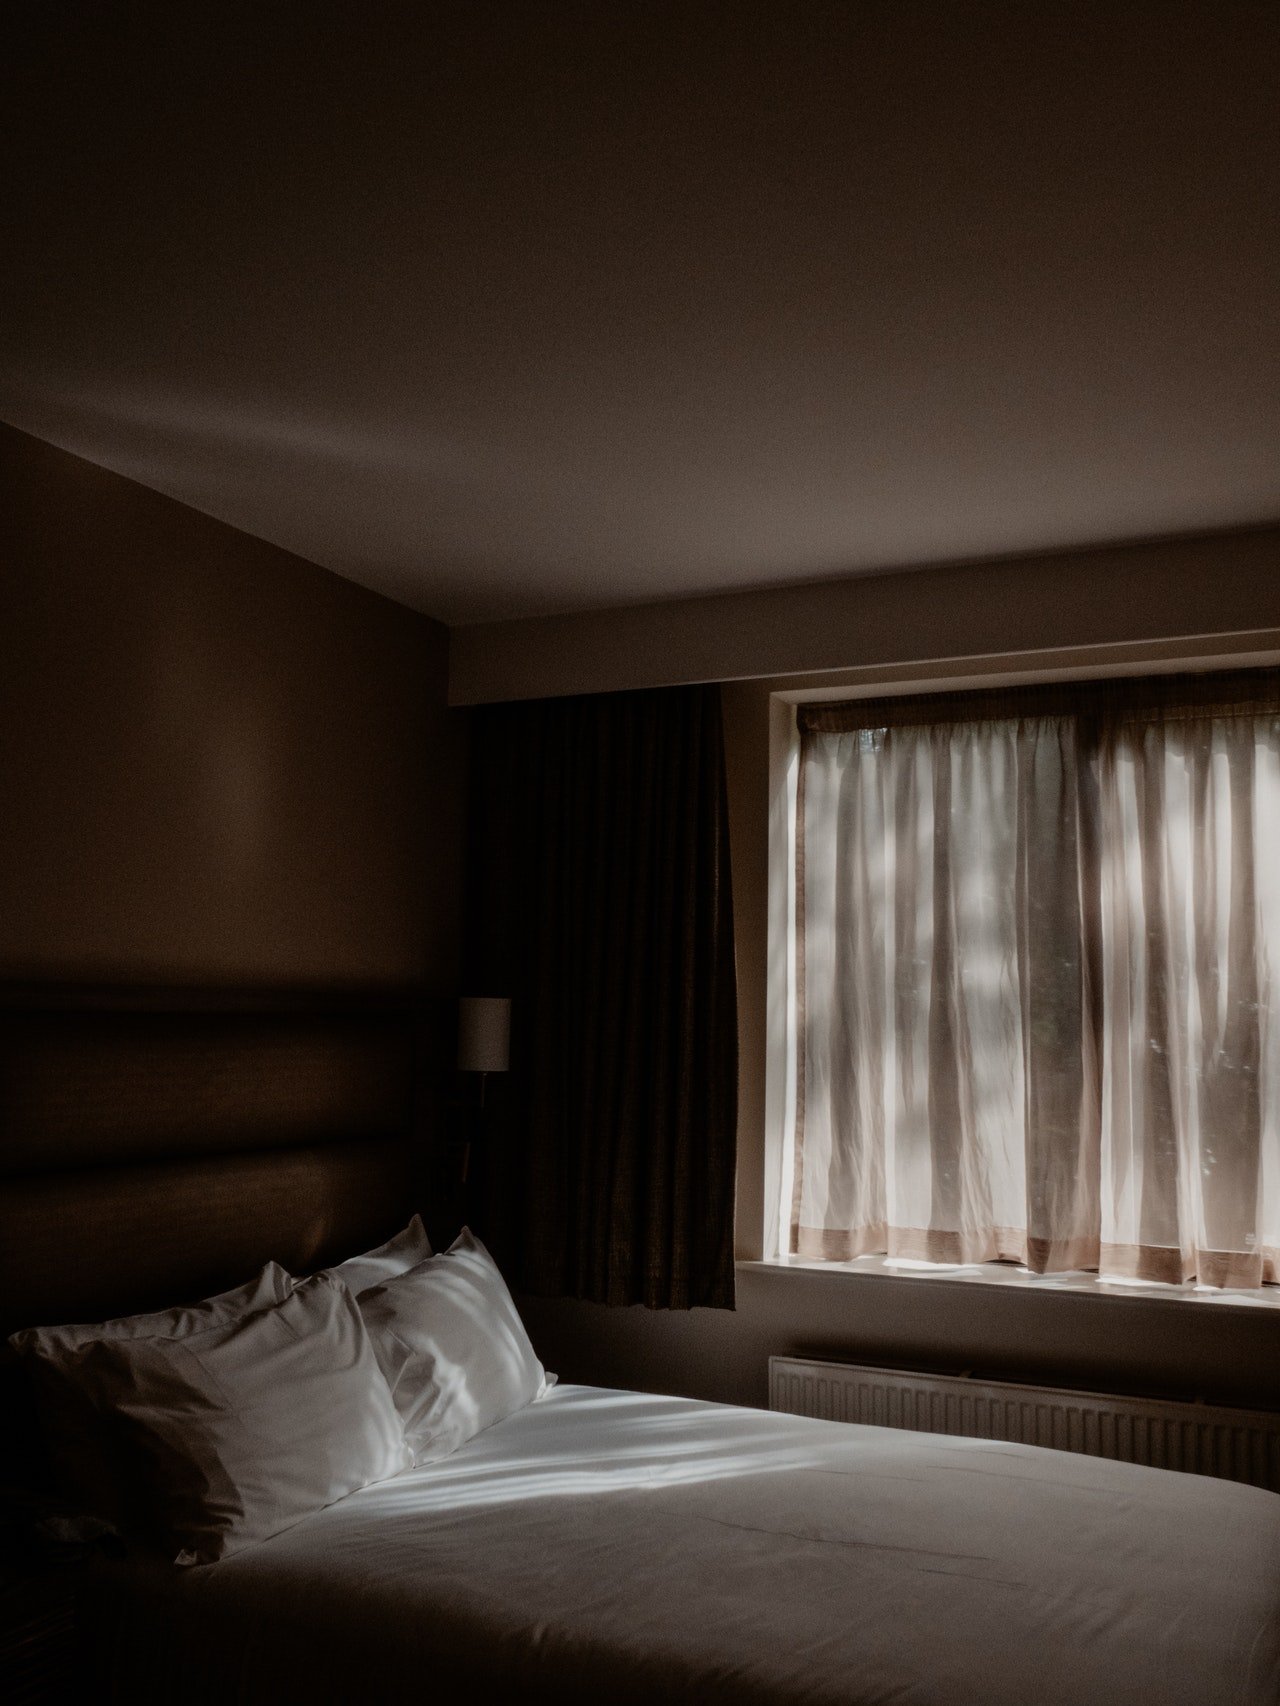 La cama vacía de un dormitorio. | Foto: Pexels